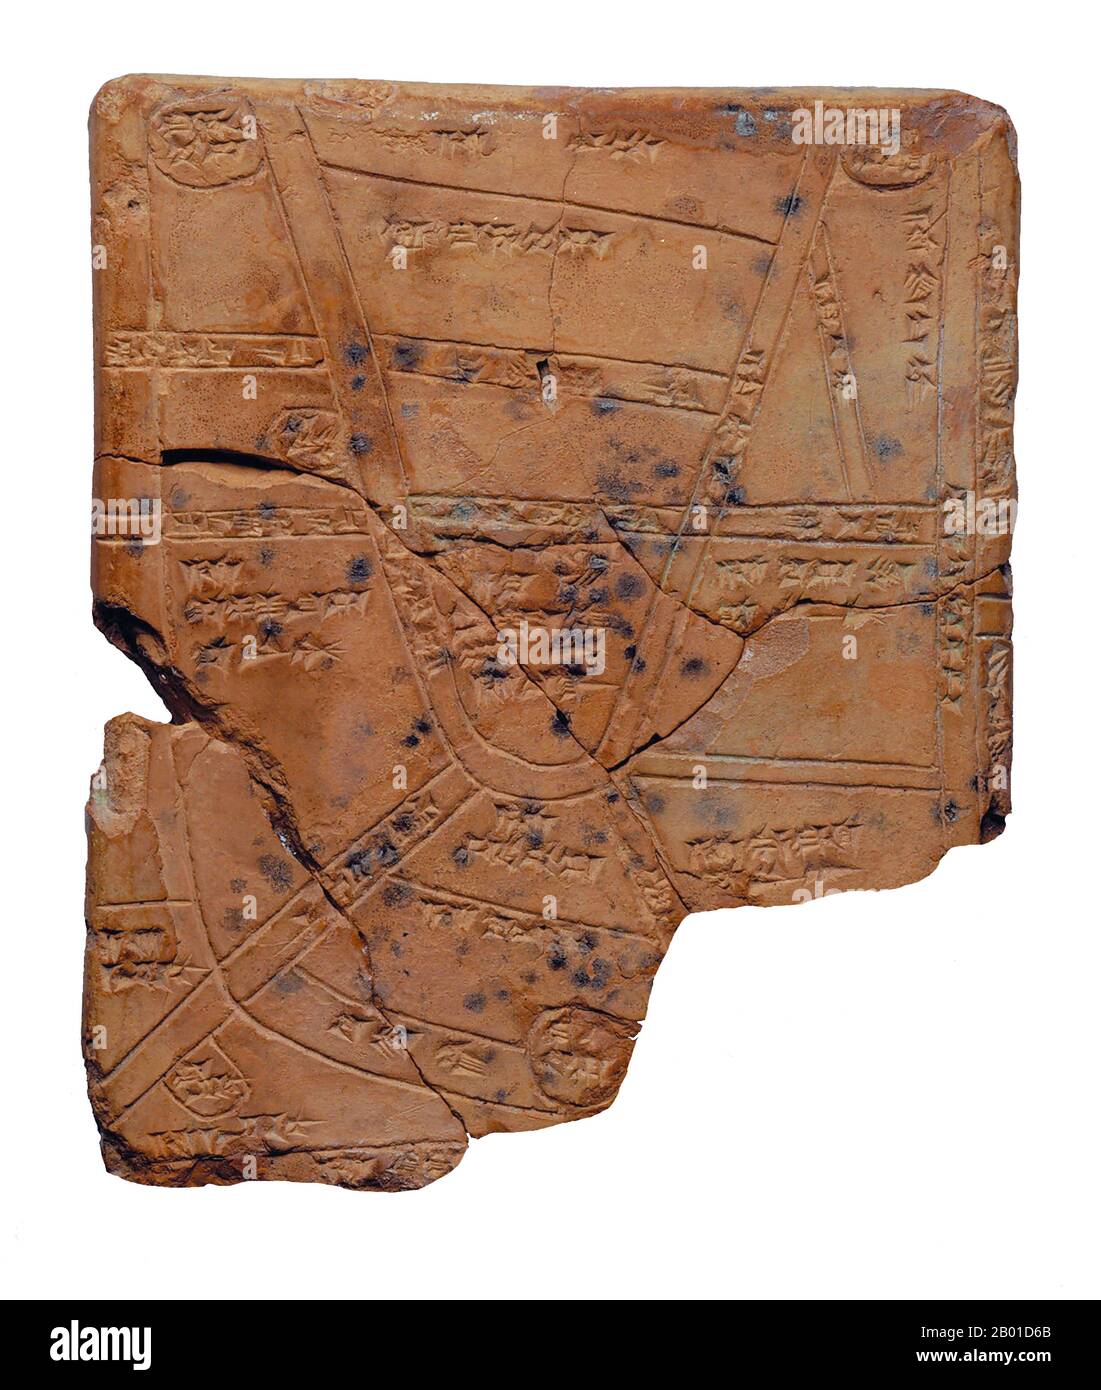 Irak: Carte de la ville de Nippour incisée sur un comprimé d'argile cuite, c. 14th siècle BCE. Cet ancien comprimé d'argile est daté du 14th-13th siècle avant notre ère, et il est inscrit sur elle une carte de la campagne autour de la ville mésopotamienne de Nippour, située au milieu de la plaine d'inondation de Mésopotamie méridionale, près de la ville moderne de Diwaniyah. L'inscription sur la tablette est en forme de cuneiform. Il peut s'agir de la plus ancienne carte de la ville du monde. Banque D'Images